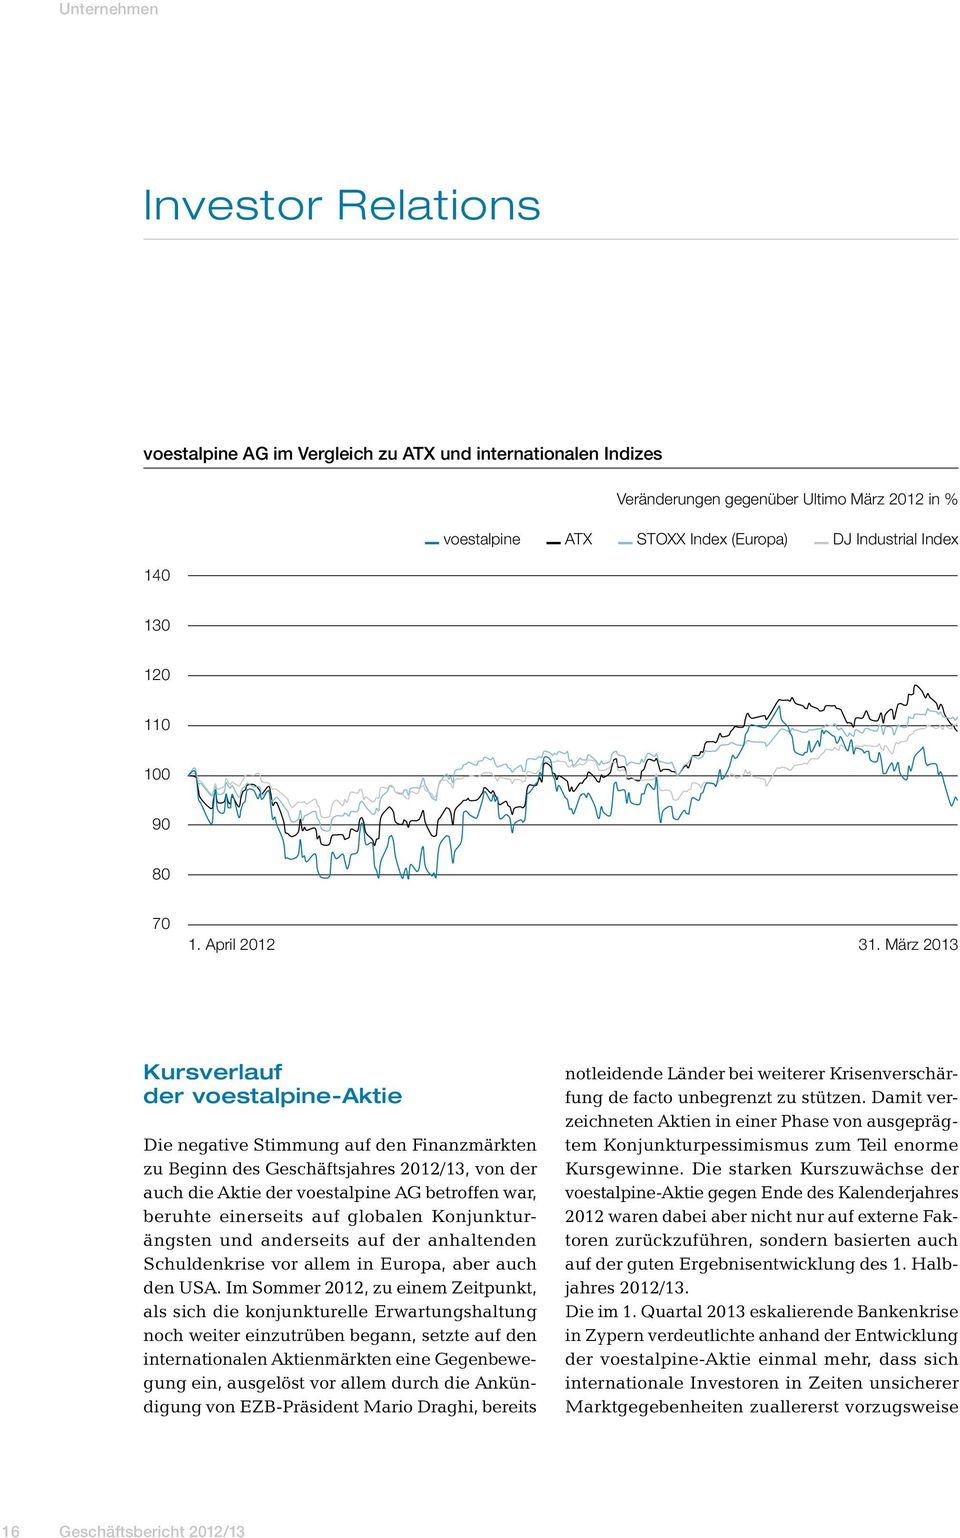 März 2013 Kursverlauf der voestalpine-aktie Die negative Stimmung auf den Finanzmärkten zu Beginn des Geschäftsjahres 2012/13, von der auch die Aktie der voestalpine AG betroffen war, beruhte